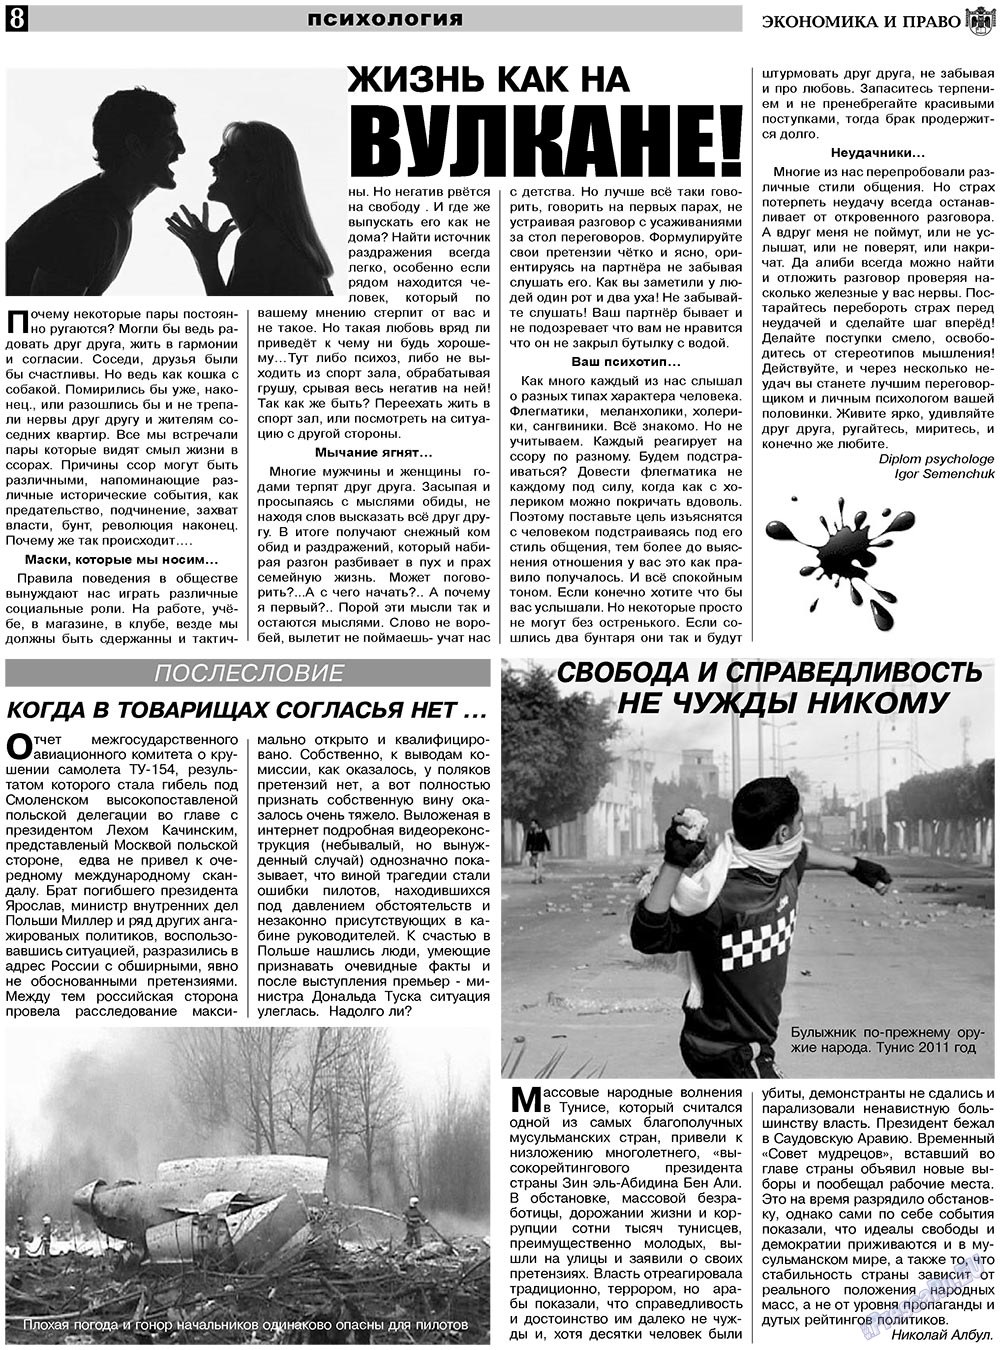 Экономика и право, газета. 2011 №2 стр.8